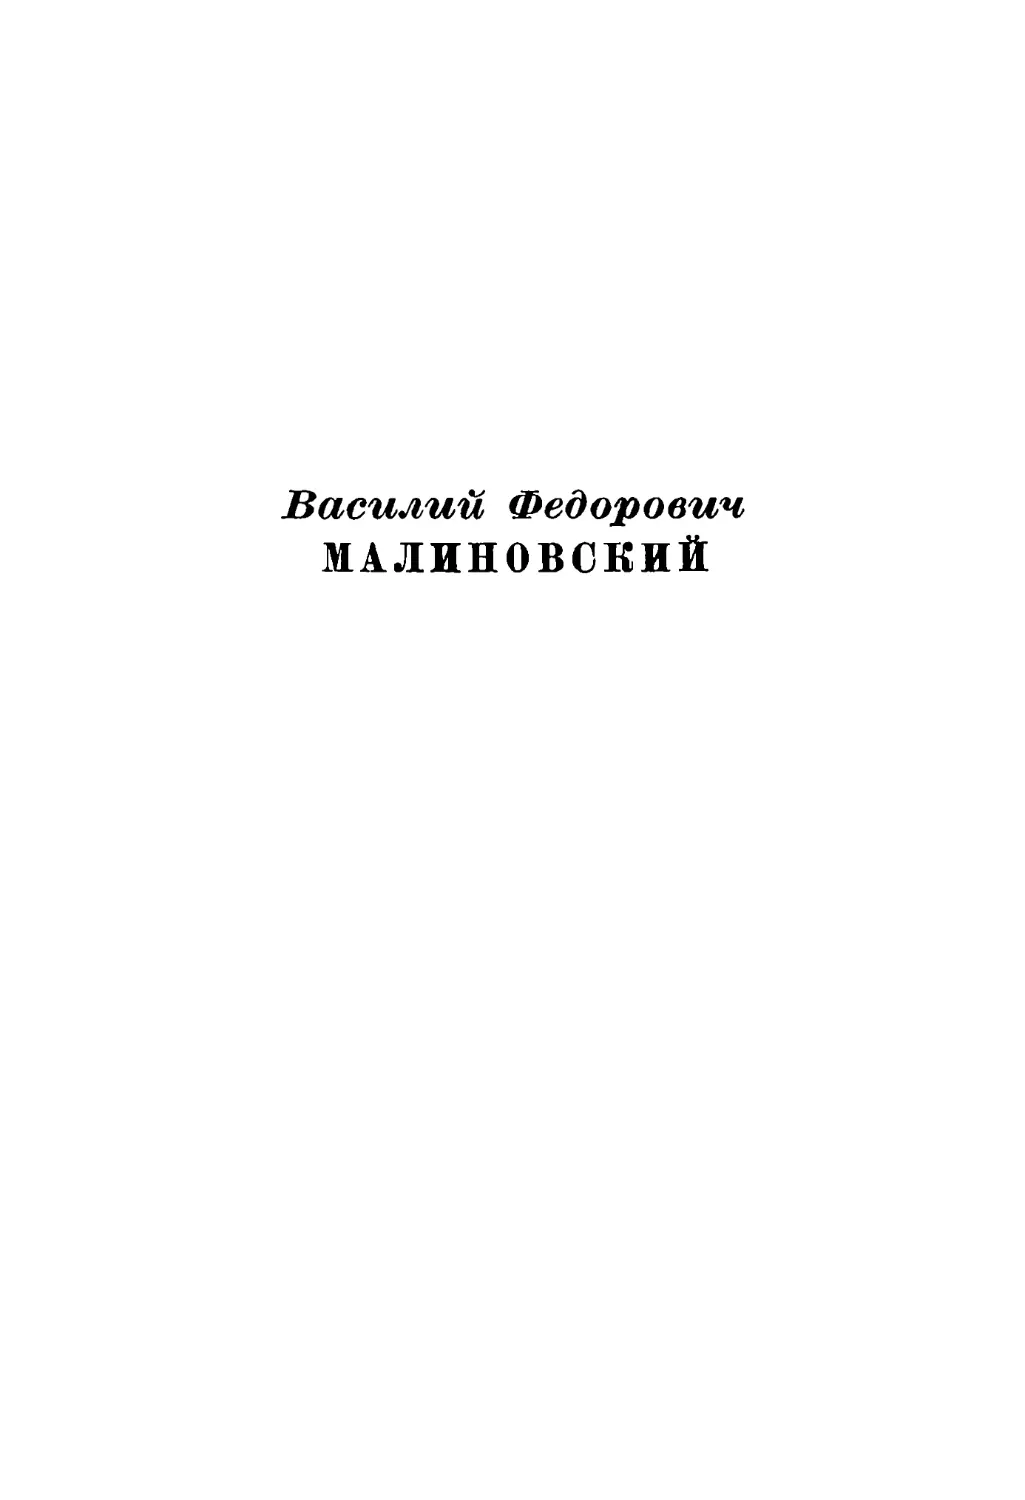 Β. Φ. Mалиновский